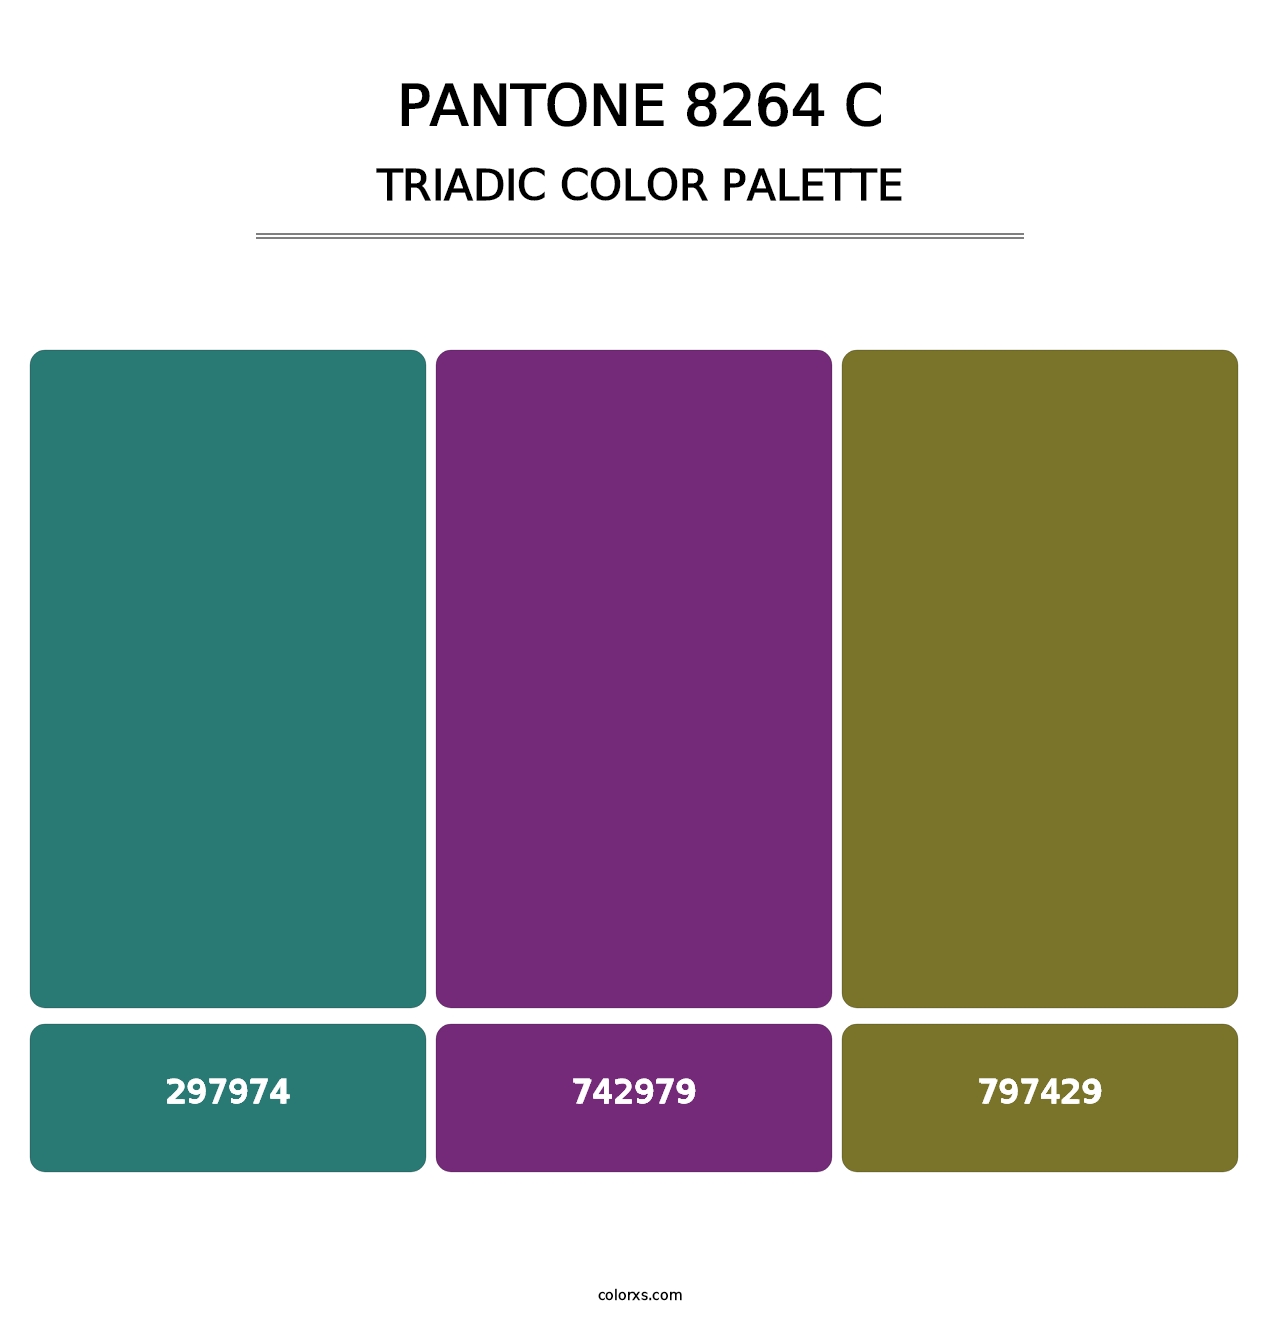 PANTONE 8264 C - Triadic Color Palette